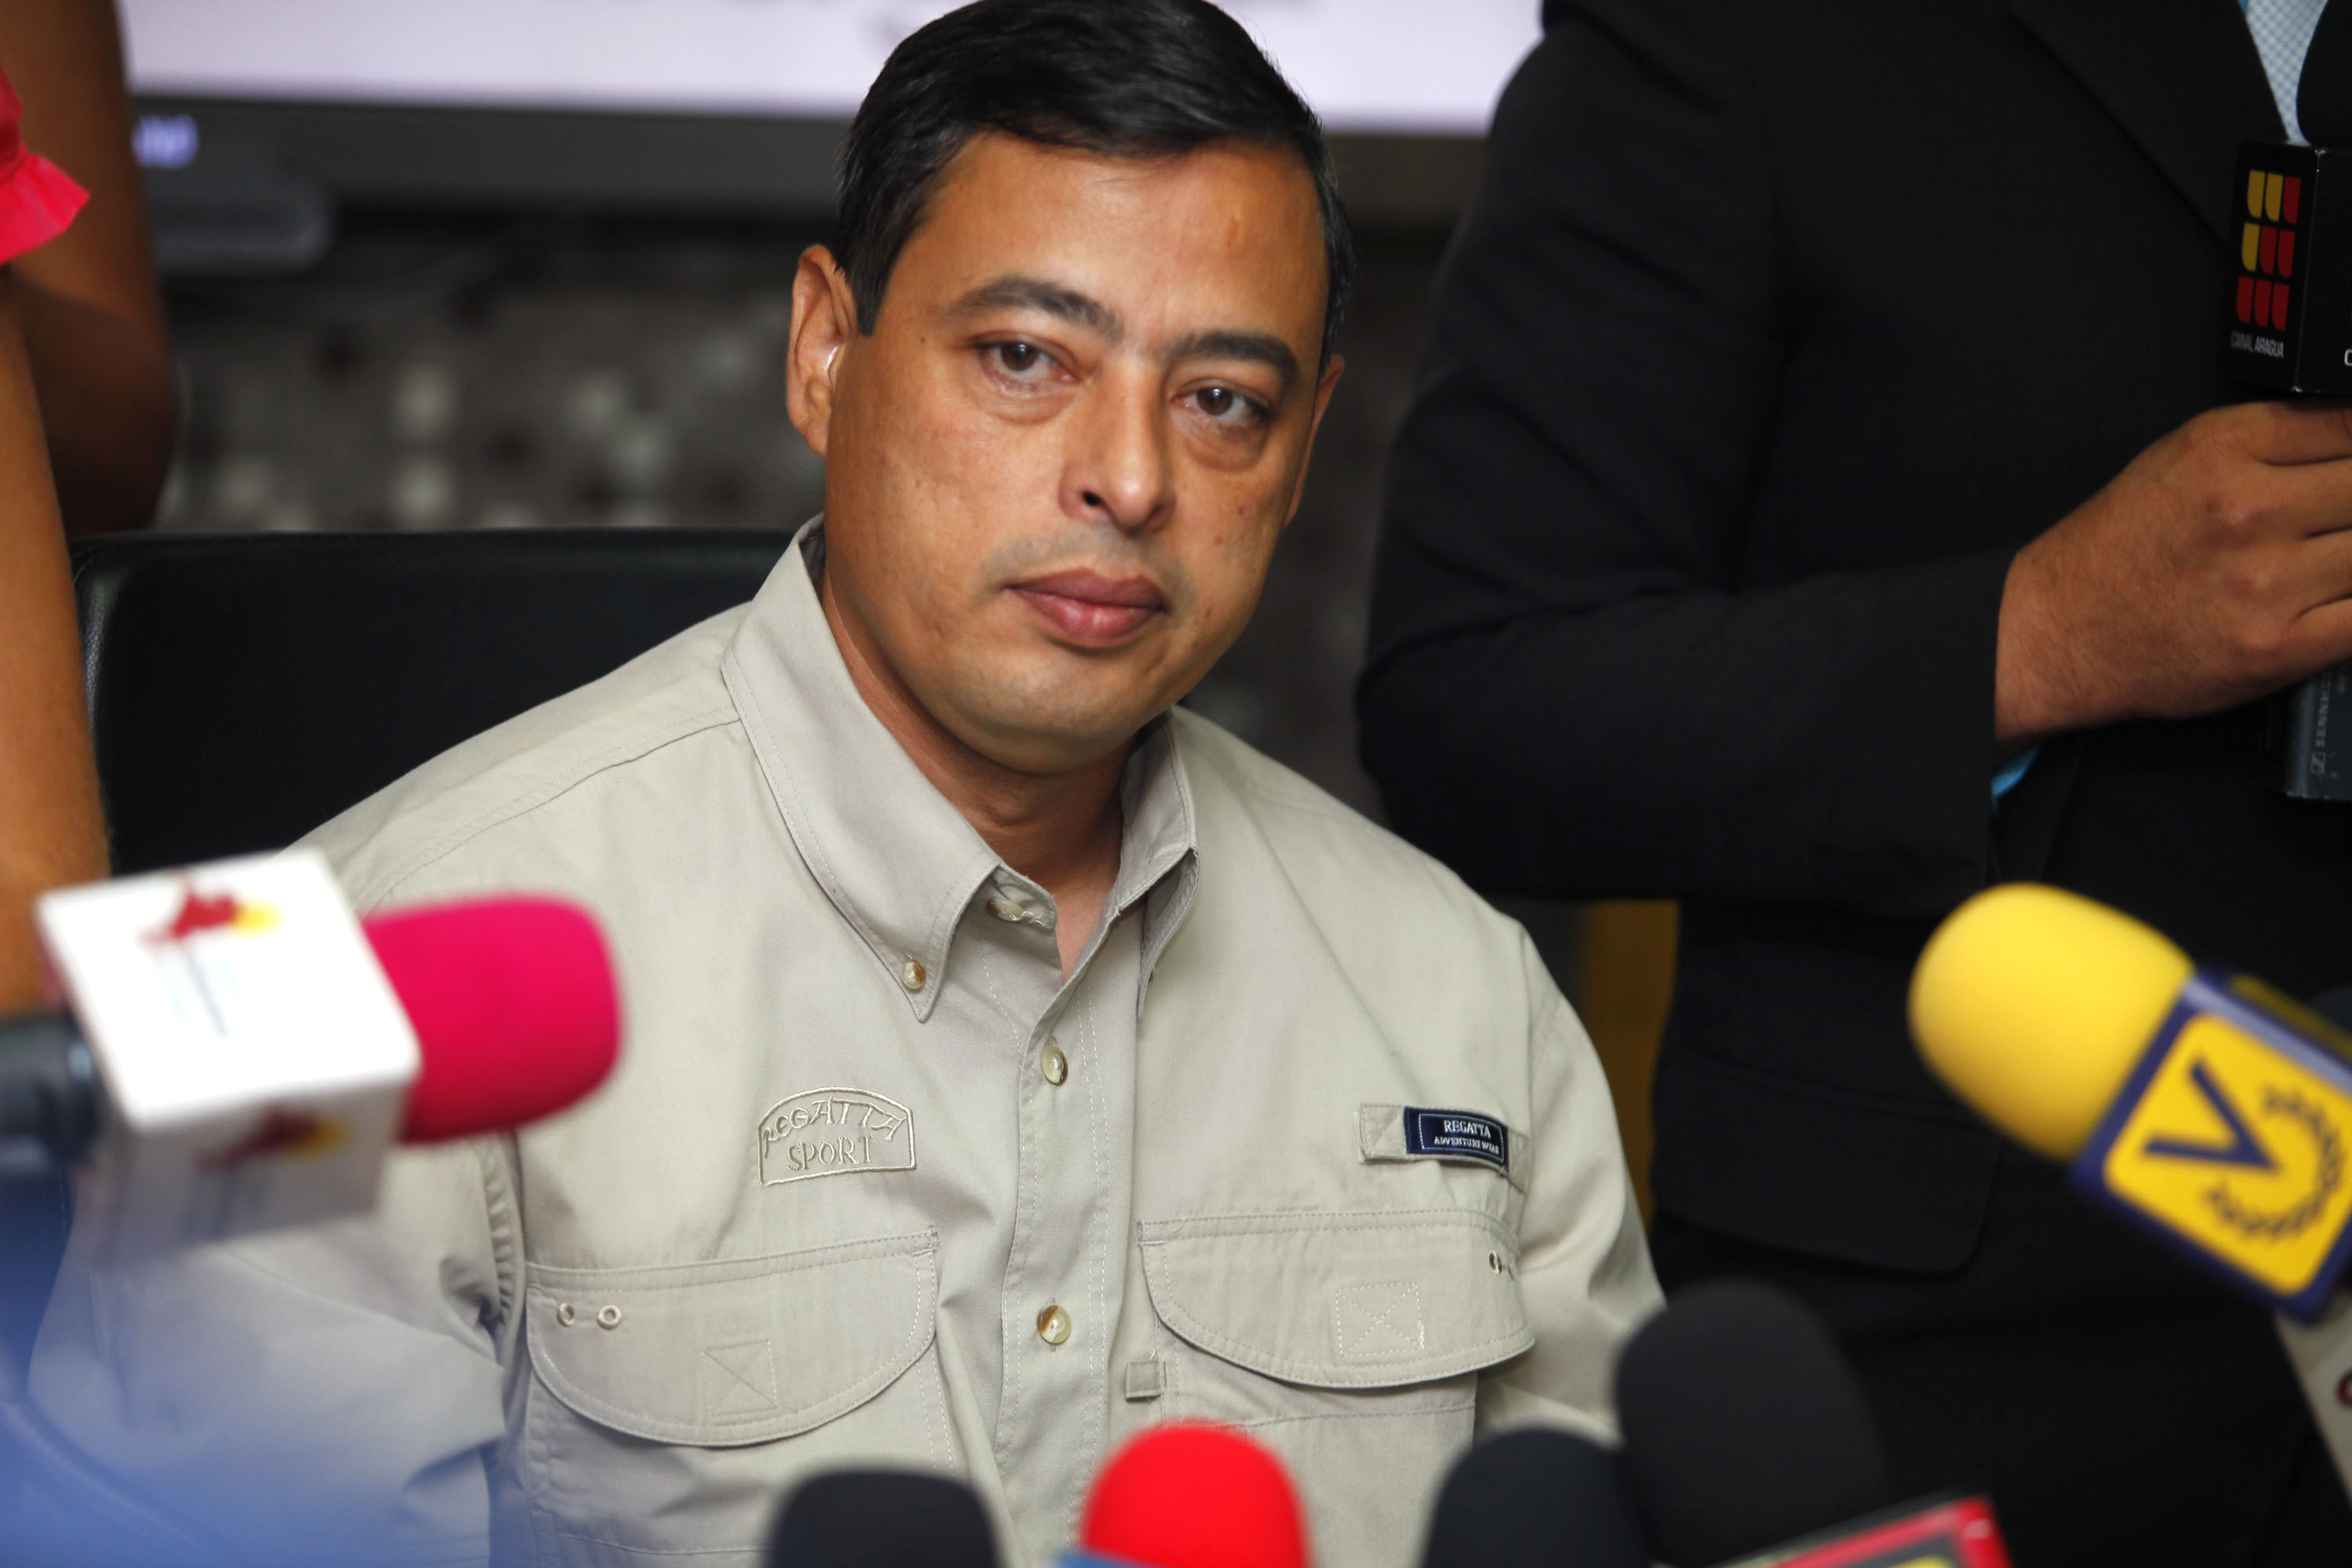 Extraoficial: Rafael Isea asegura que Tareck El Aissami se encuentra detenido en Fuerte Tiuna